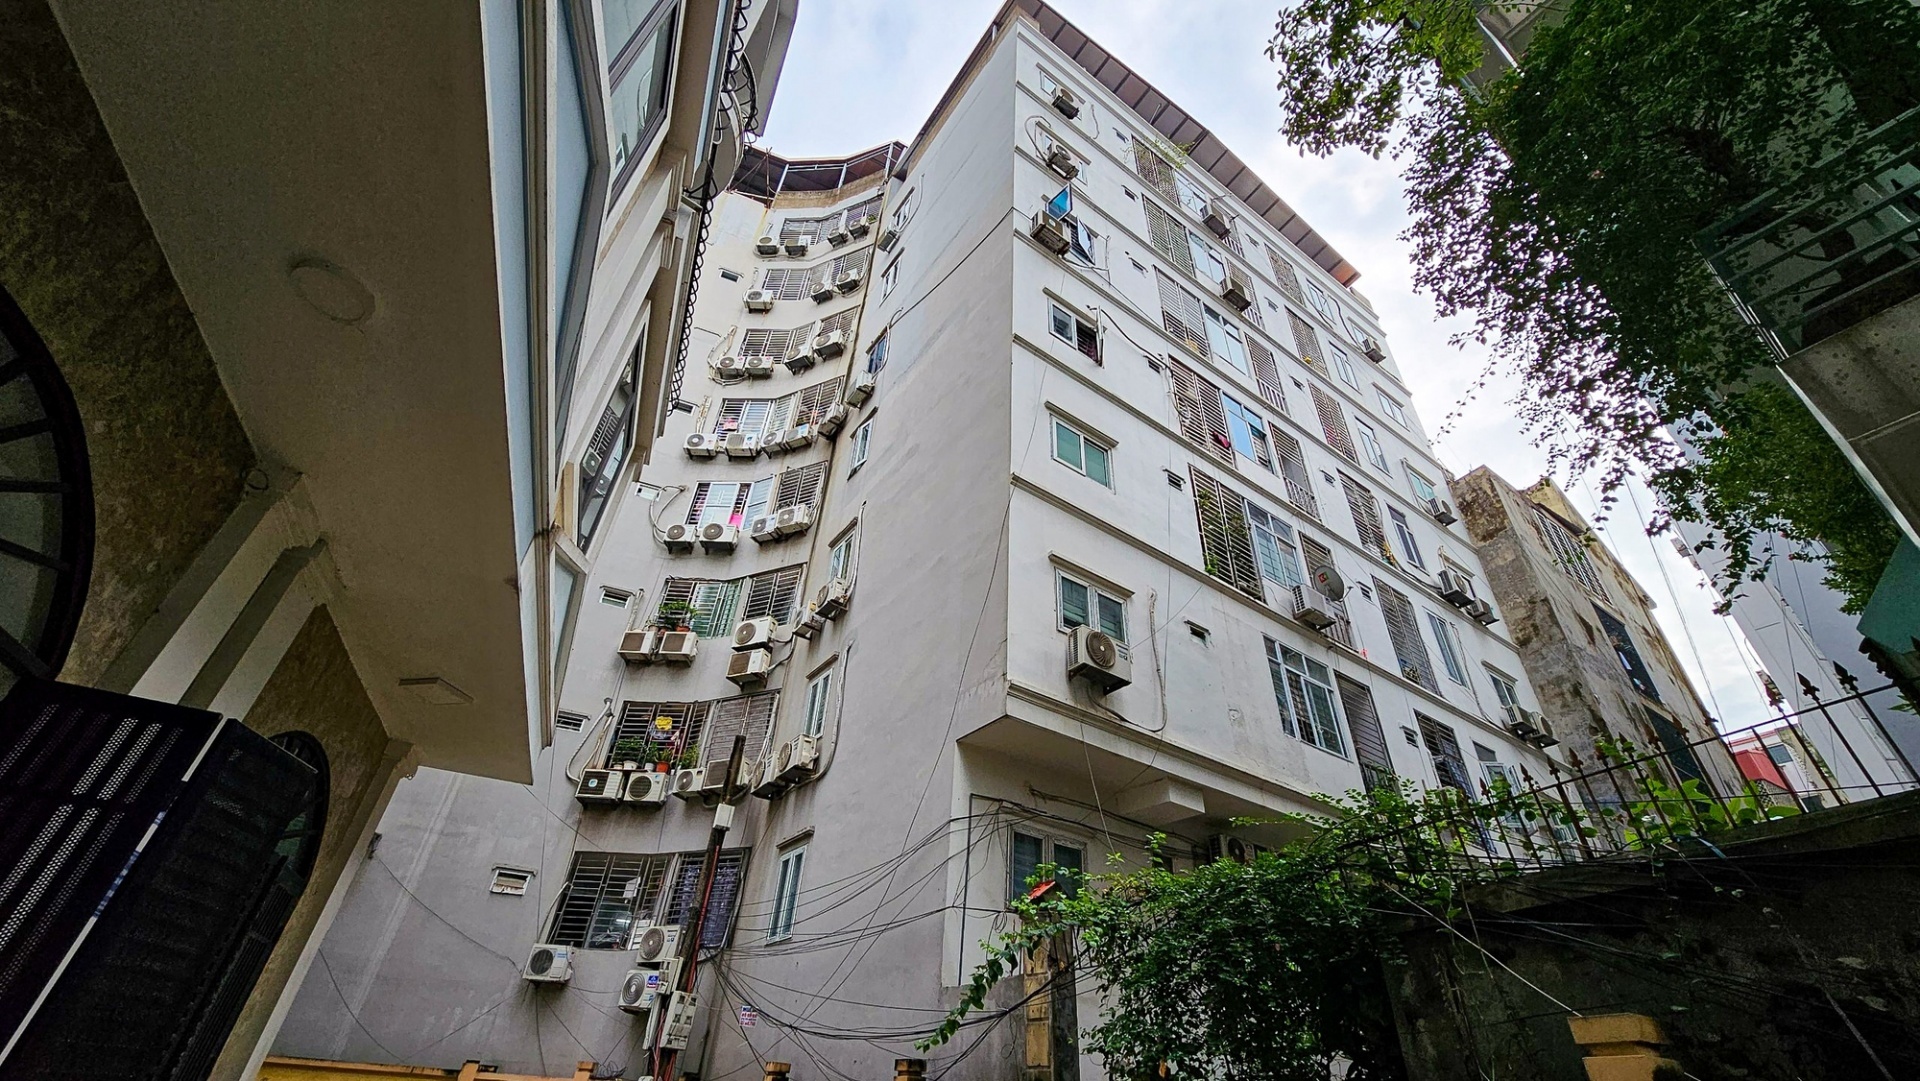 Tổng kiểm tra chung cư mini tại Hà Nội từ ngày 15/9